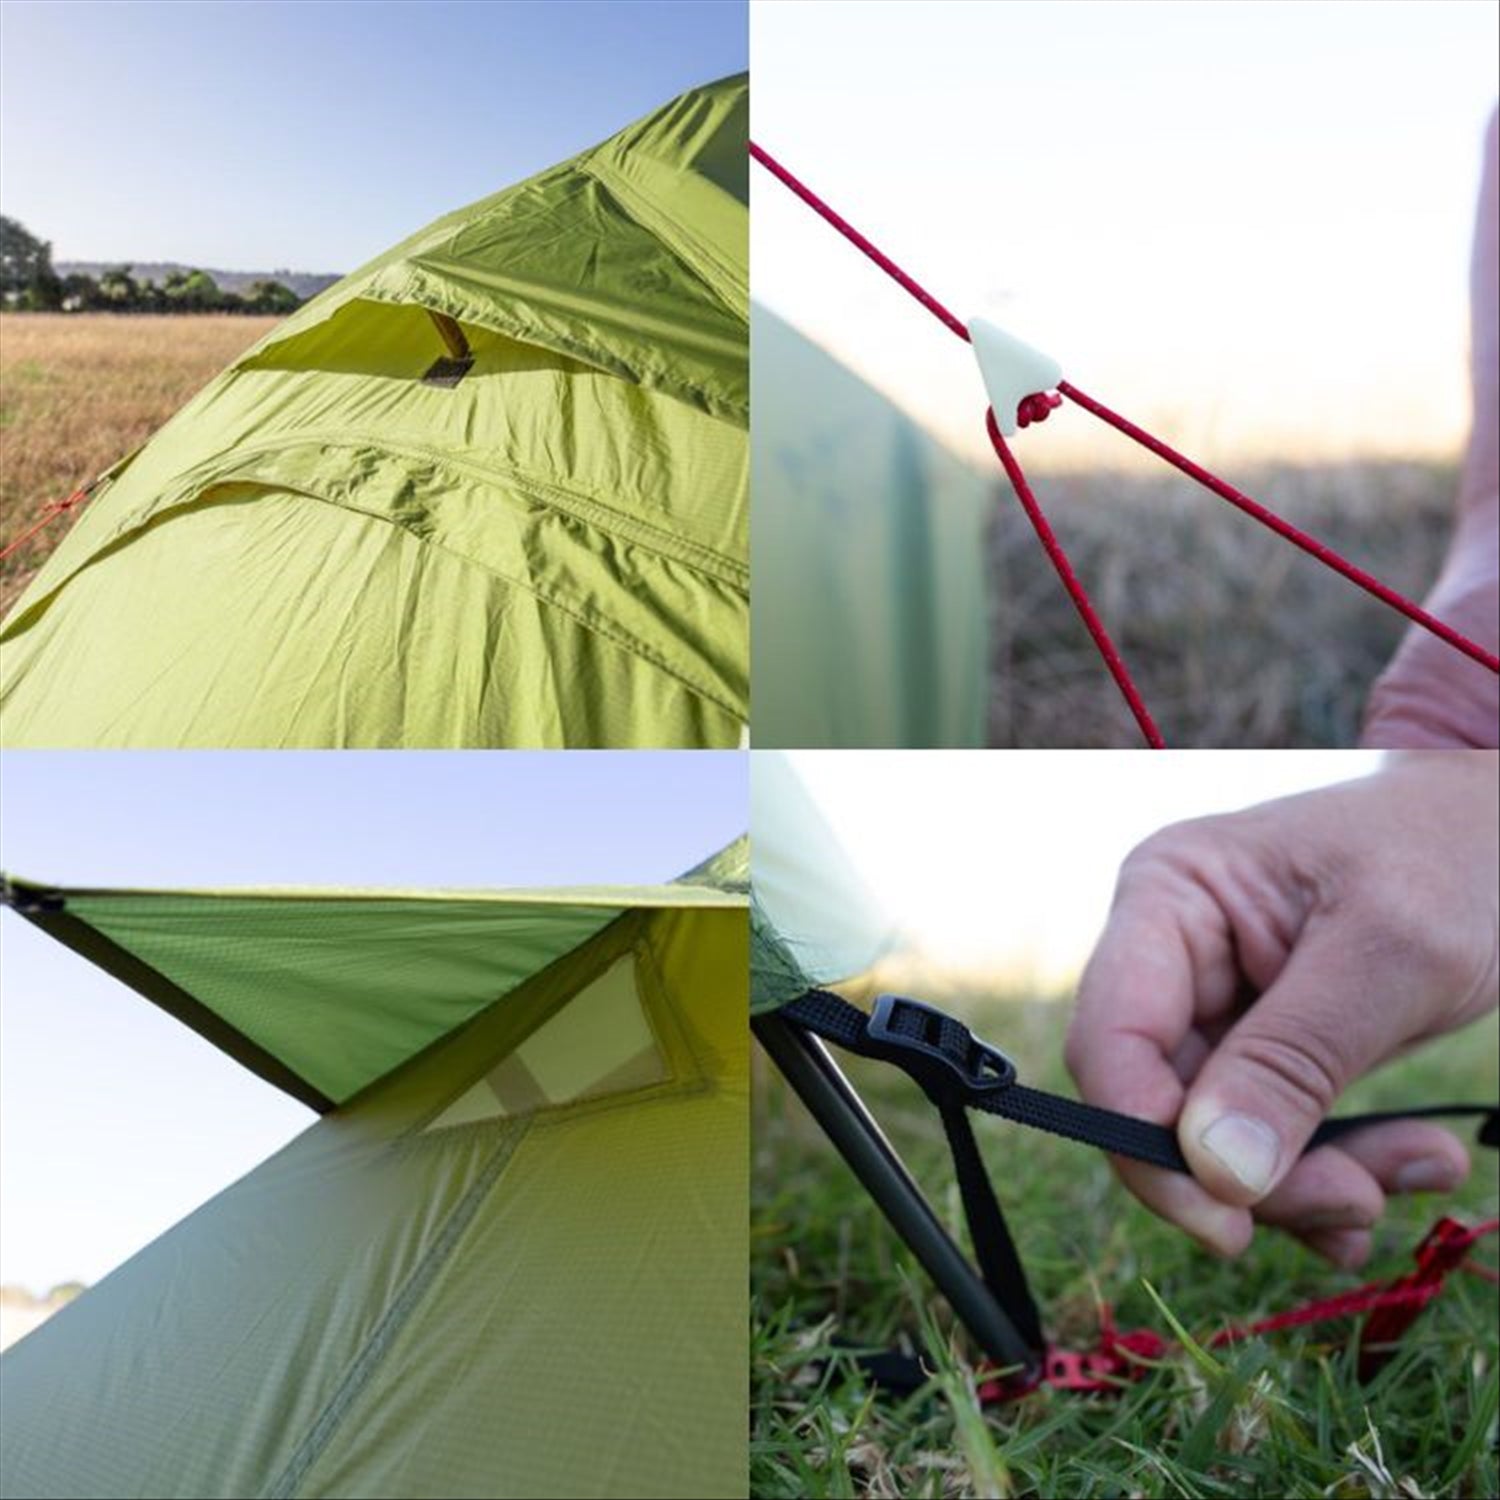 Orson Orson Tracker Pro 2 – Ripstop Silnylon 2 Person Camping Tent 1.7kg